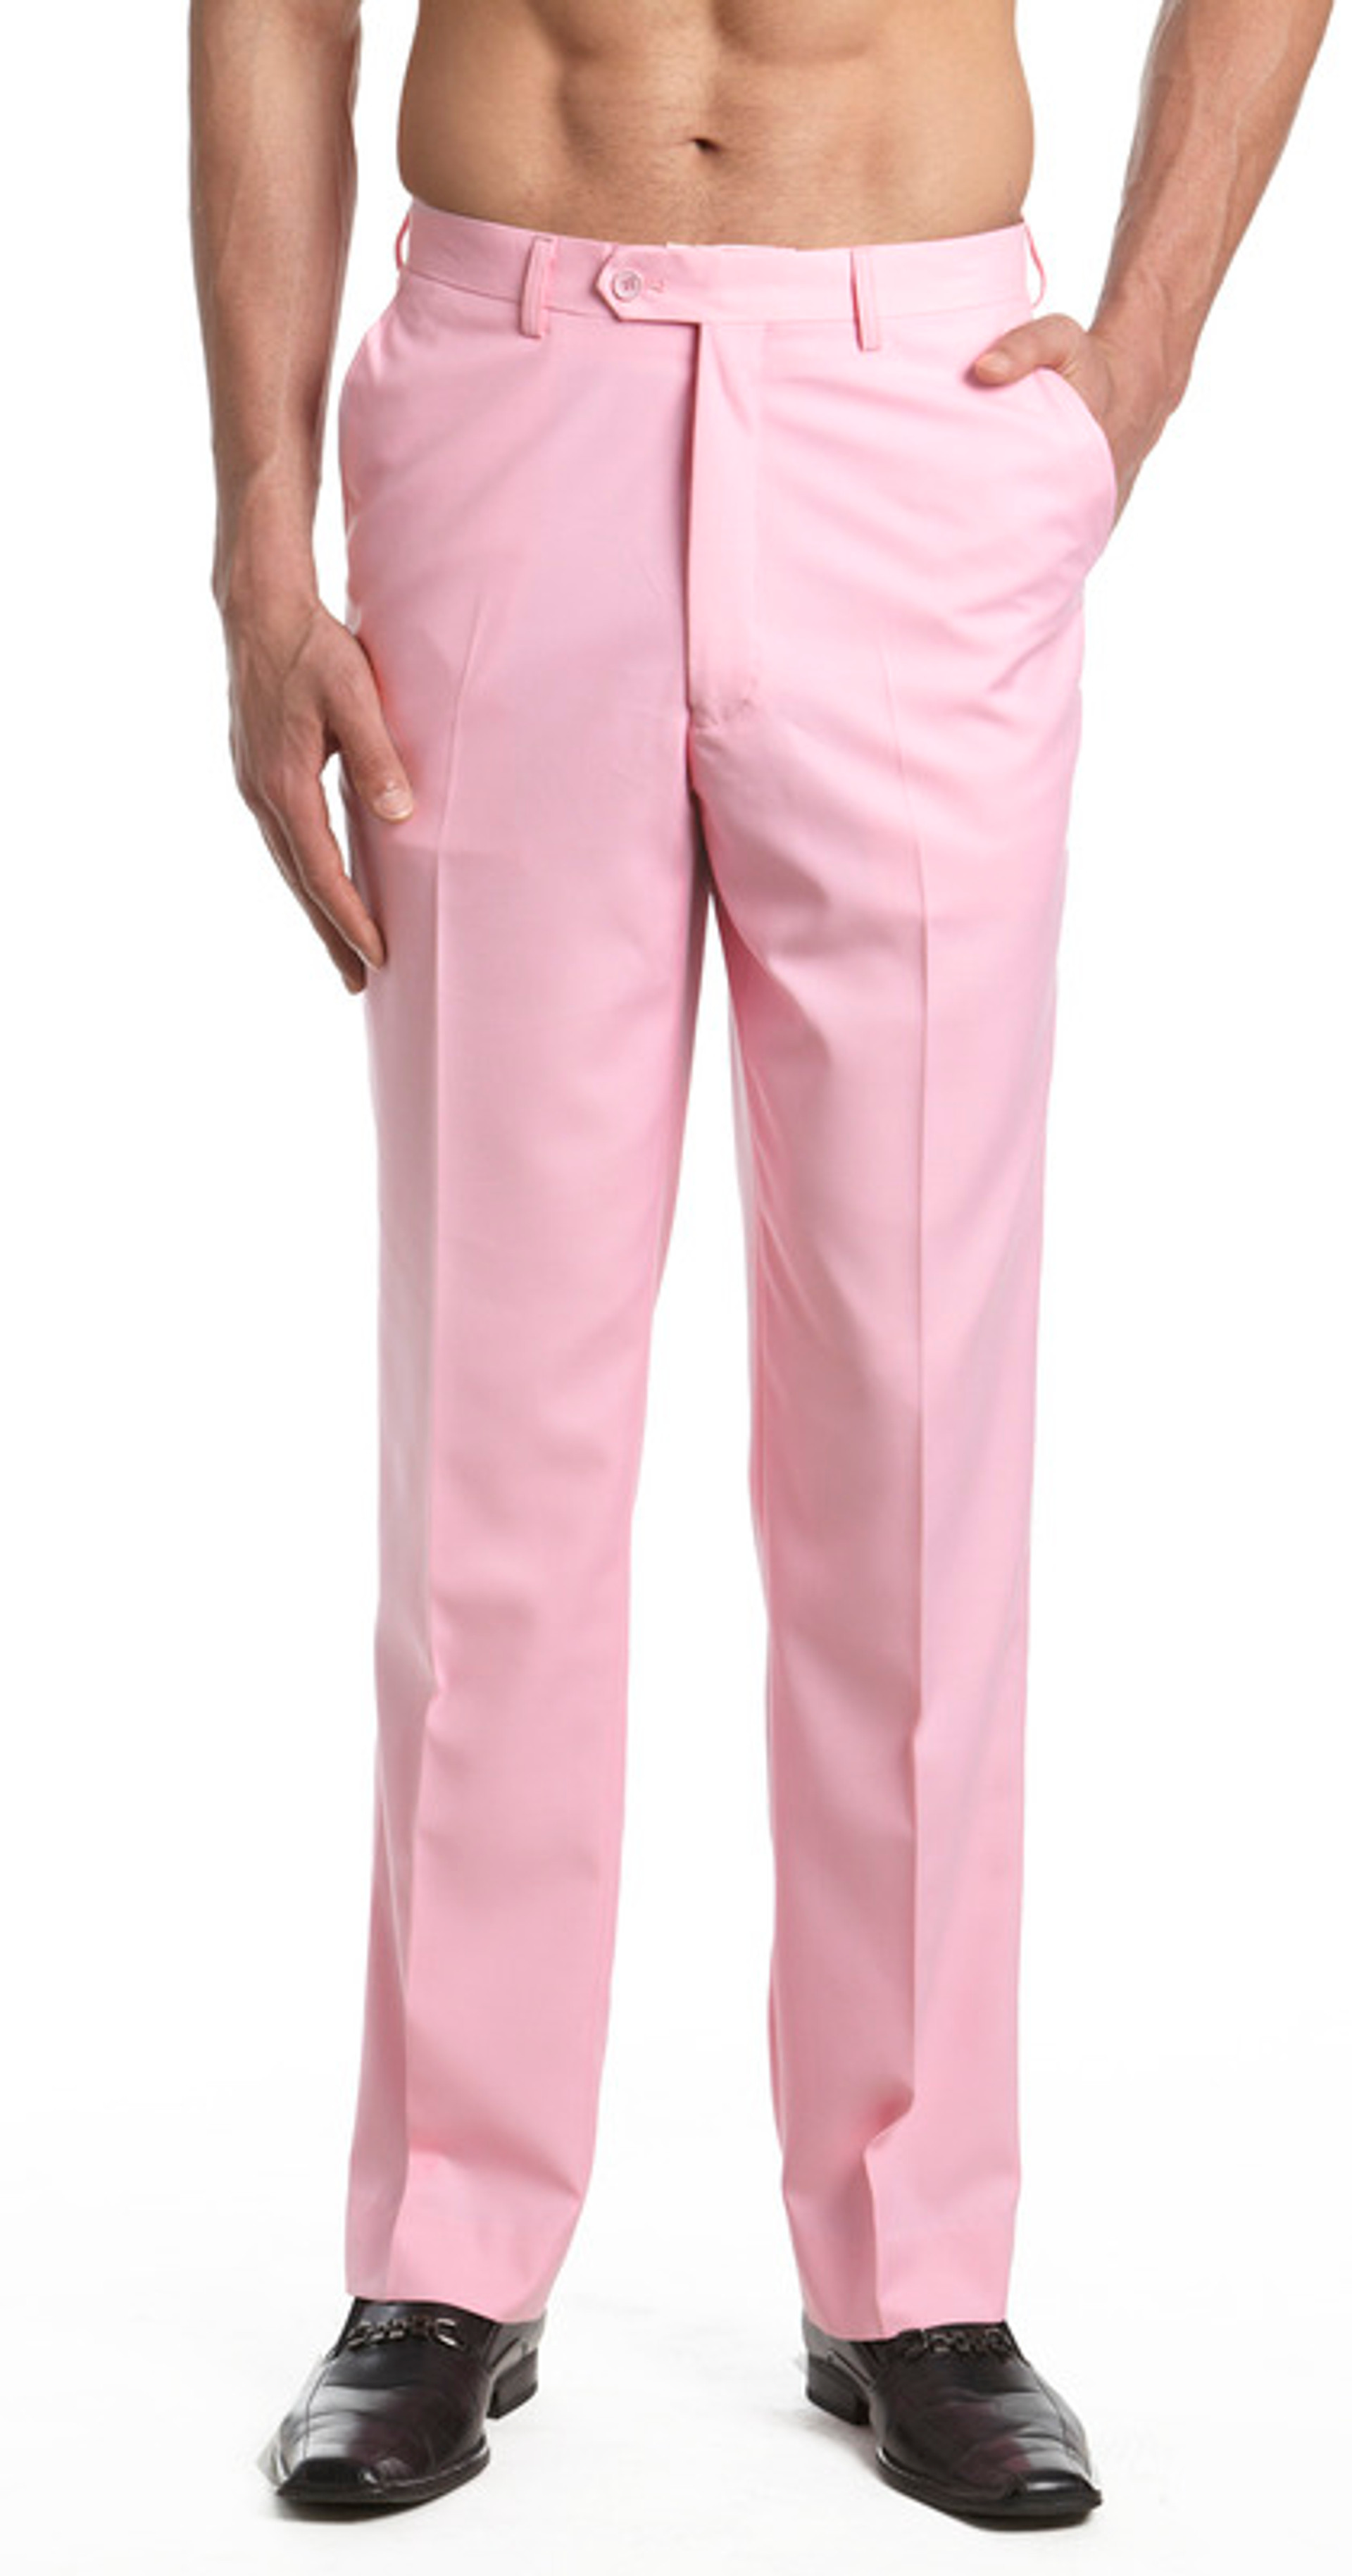 Concitor Men's Dress Pants | Solid Color Pants